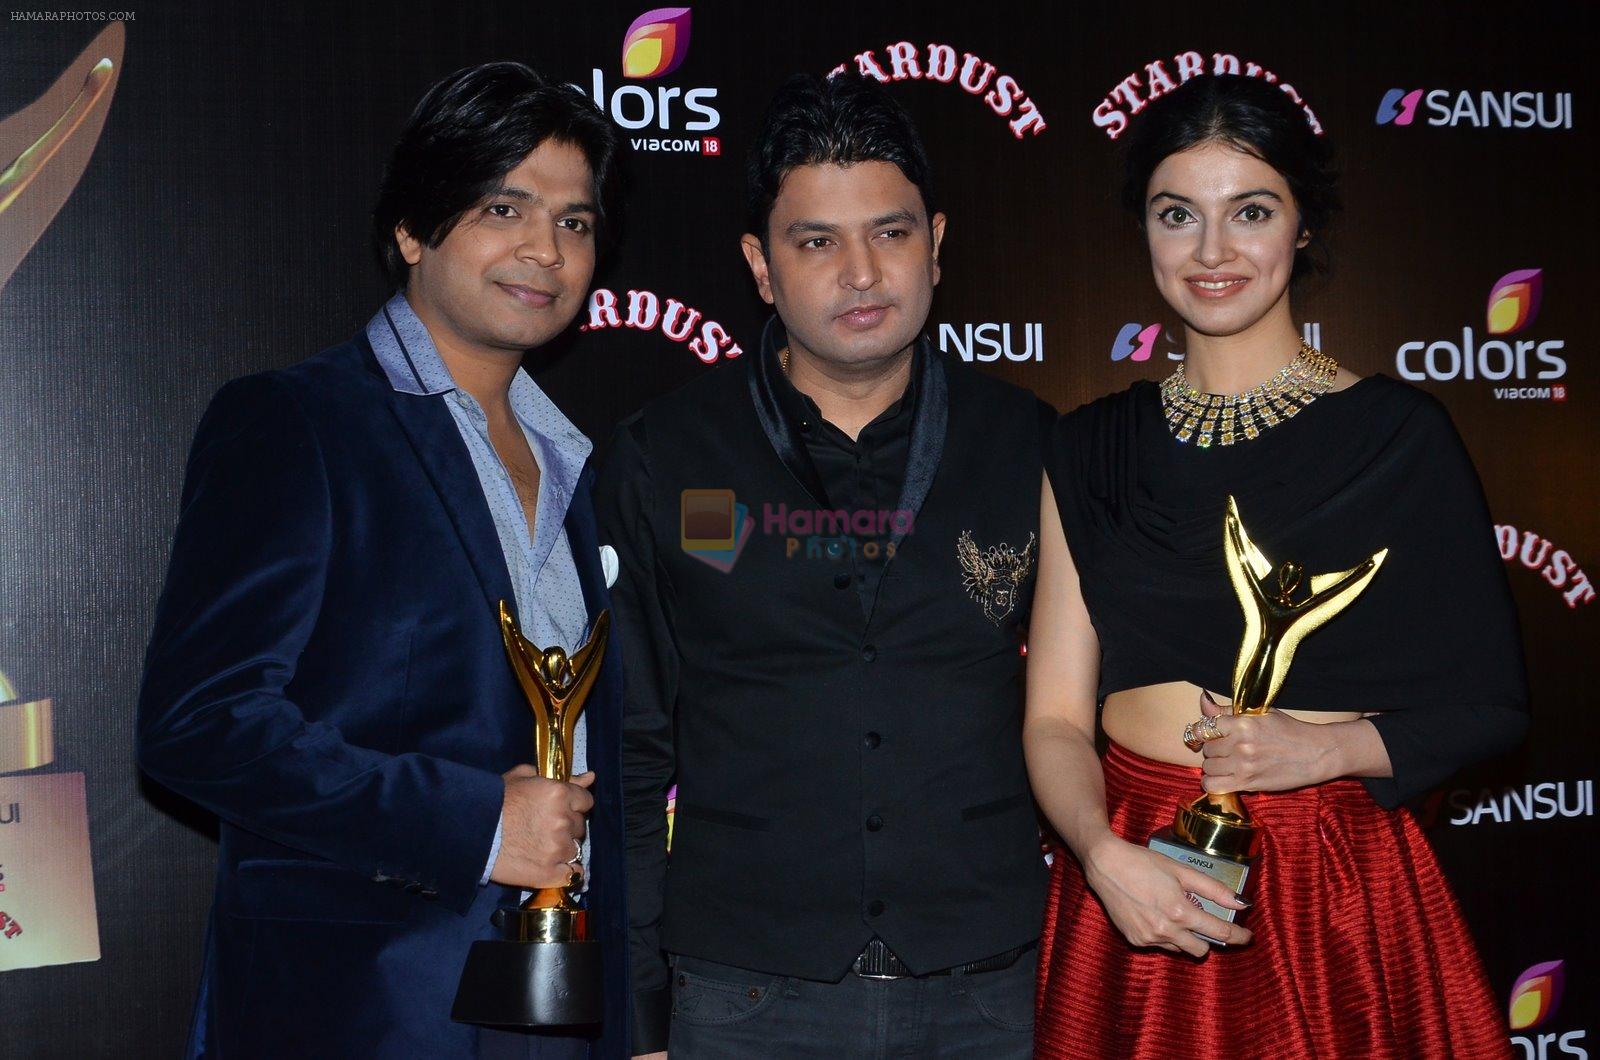 Divya Kumar, Bhushan Kumar at Stardust Awards 2014 in Mumbai on 14th Dec 2014